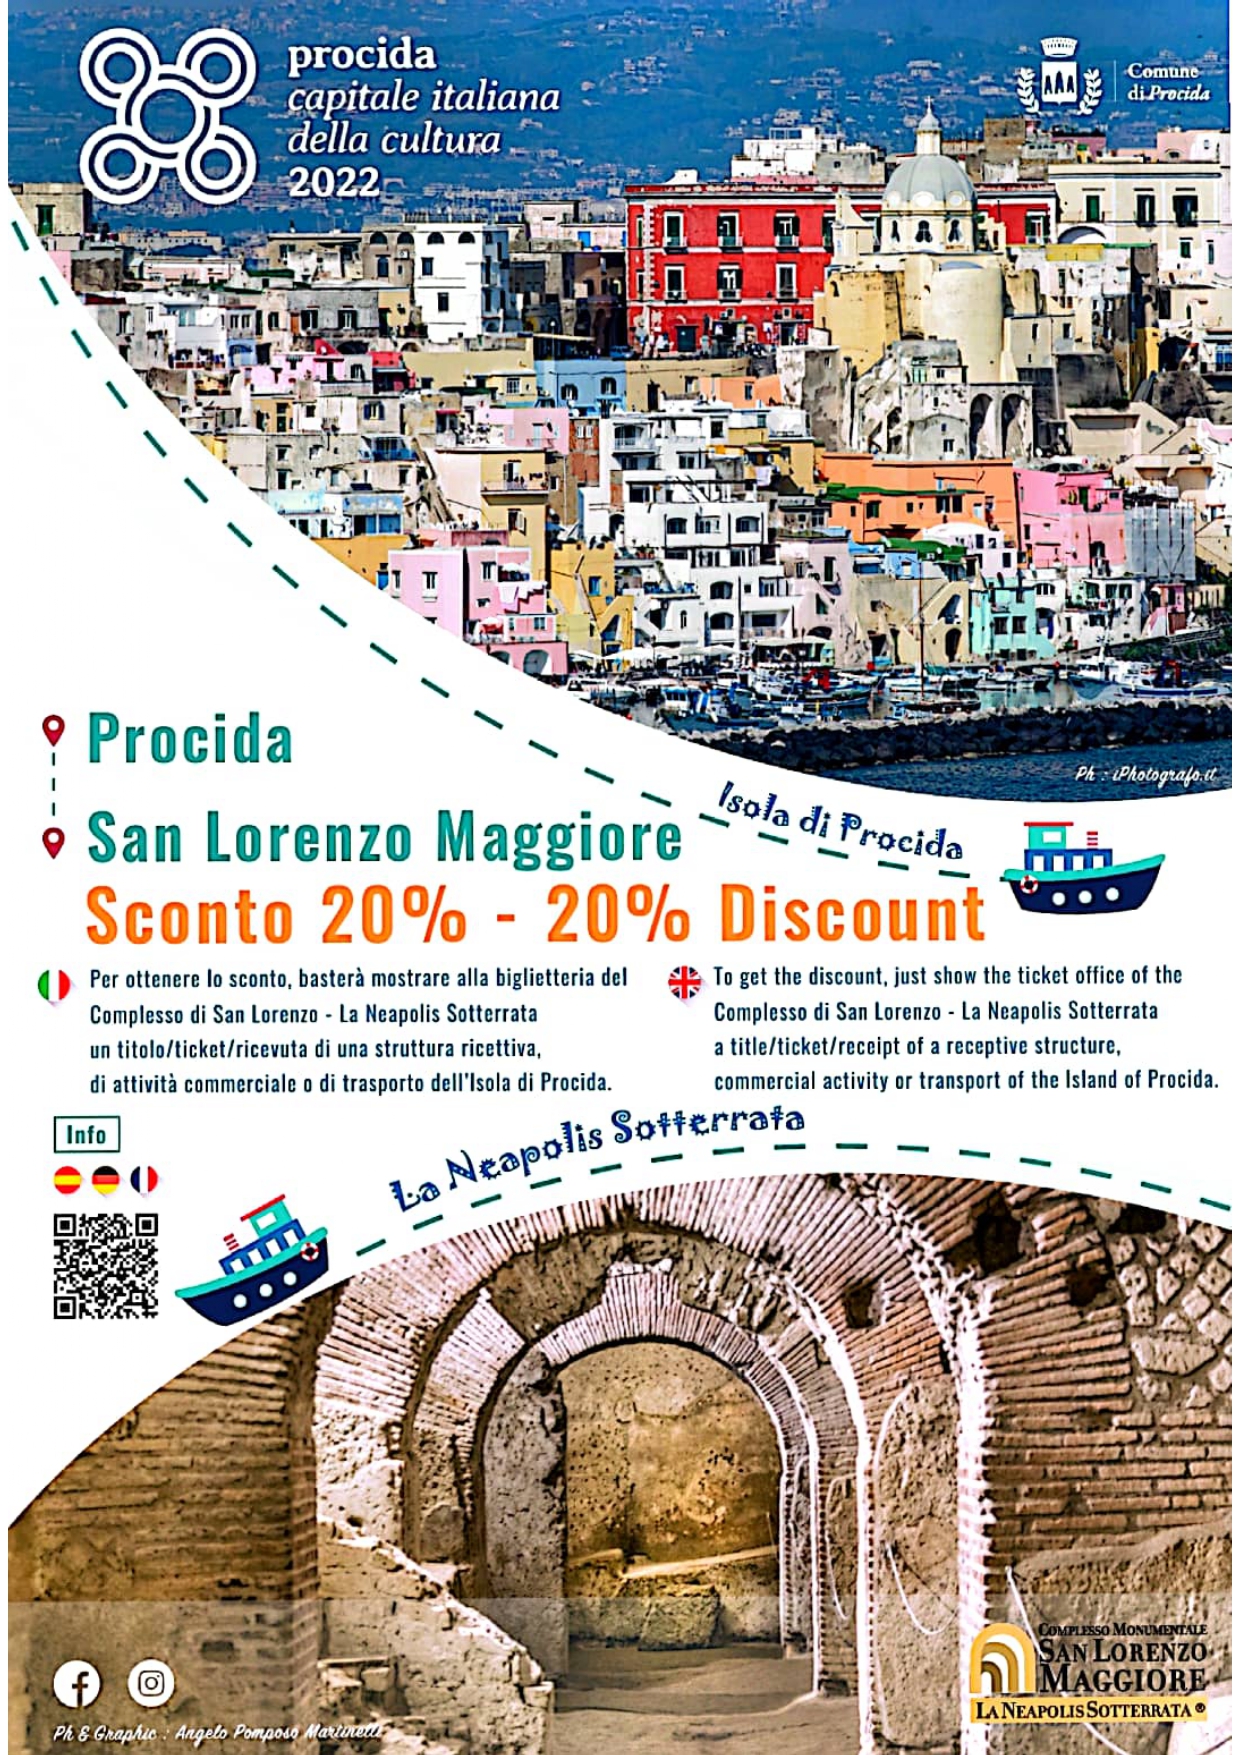 Napoli: San Lorenzo Maggiore e Procida – Capitale italiana della Cultura 2022